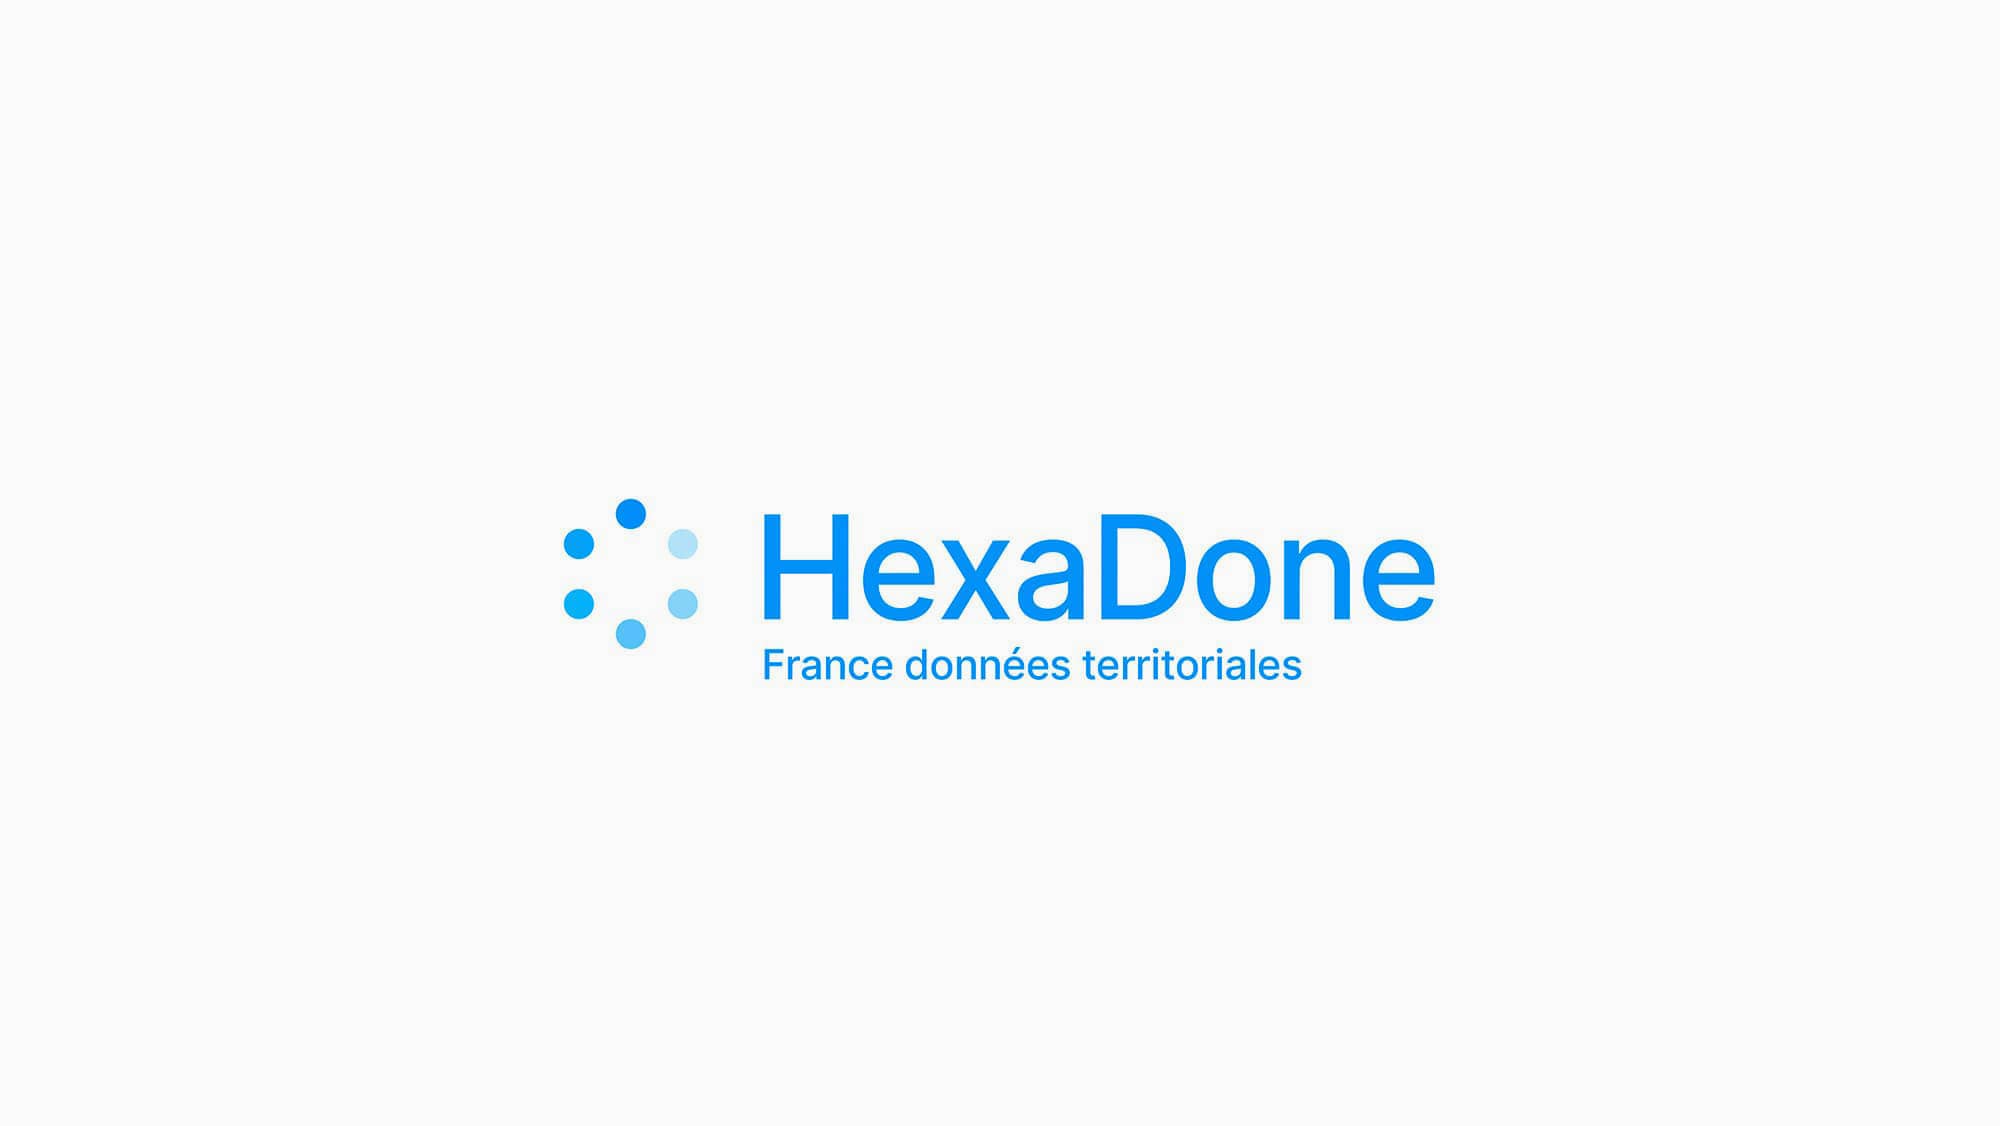 Logo Hexadone